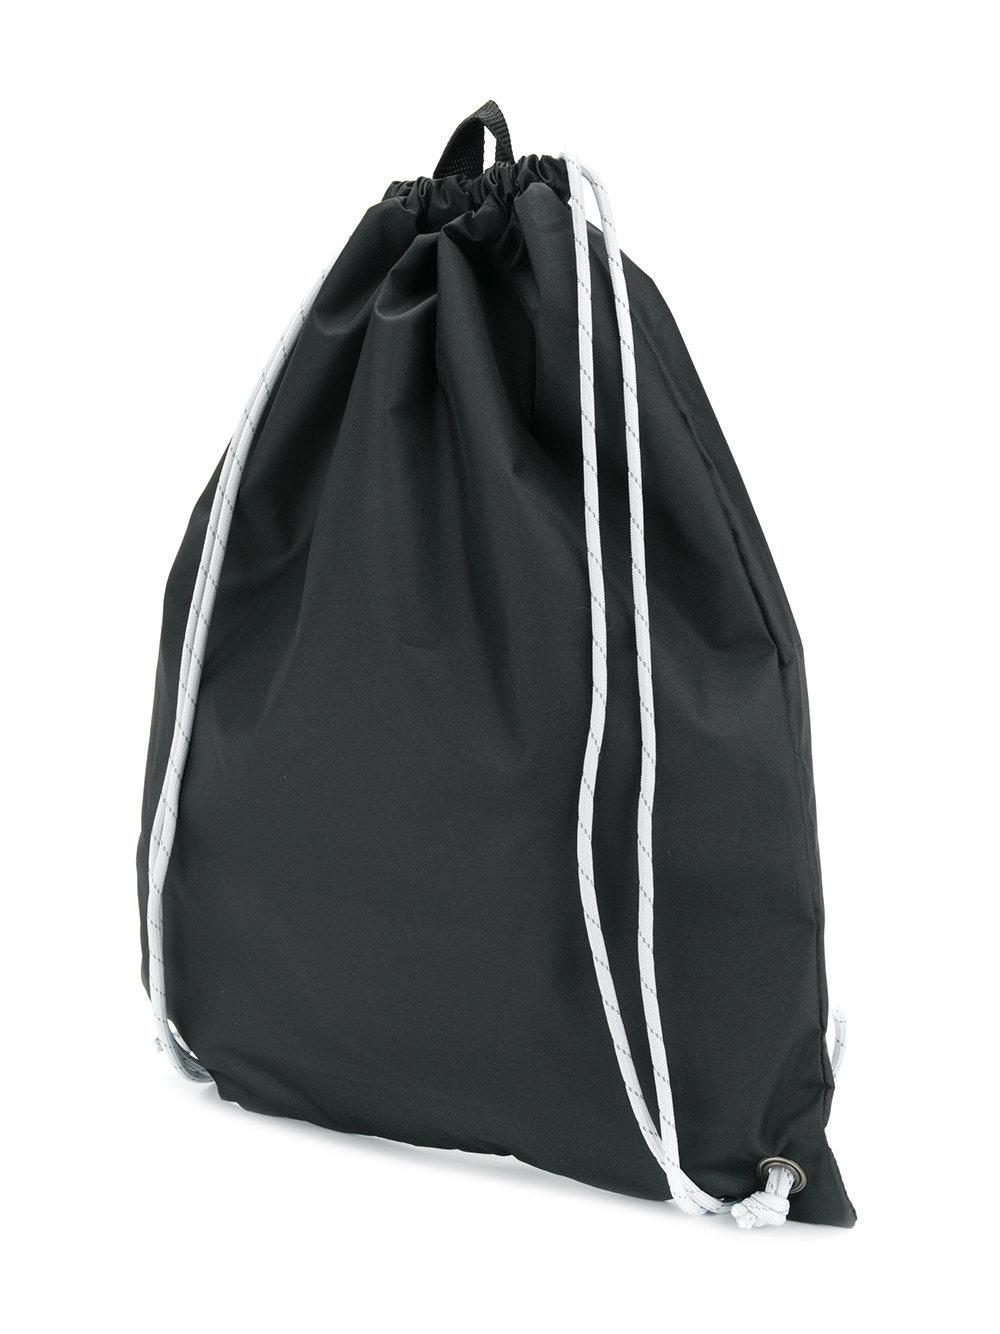 adidas Originals Gosha Rubchinskiy X Adidas Gym Bag in Black for Men - Lyst